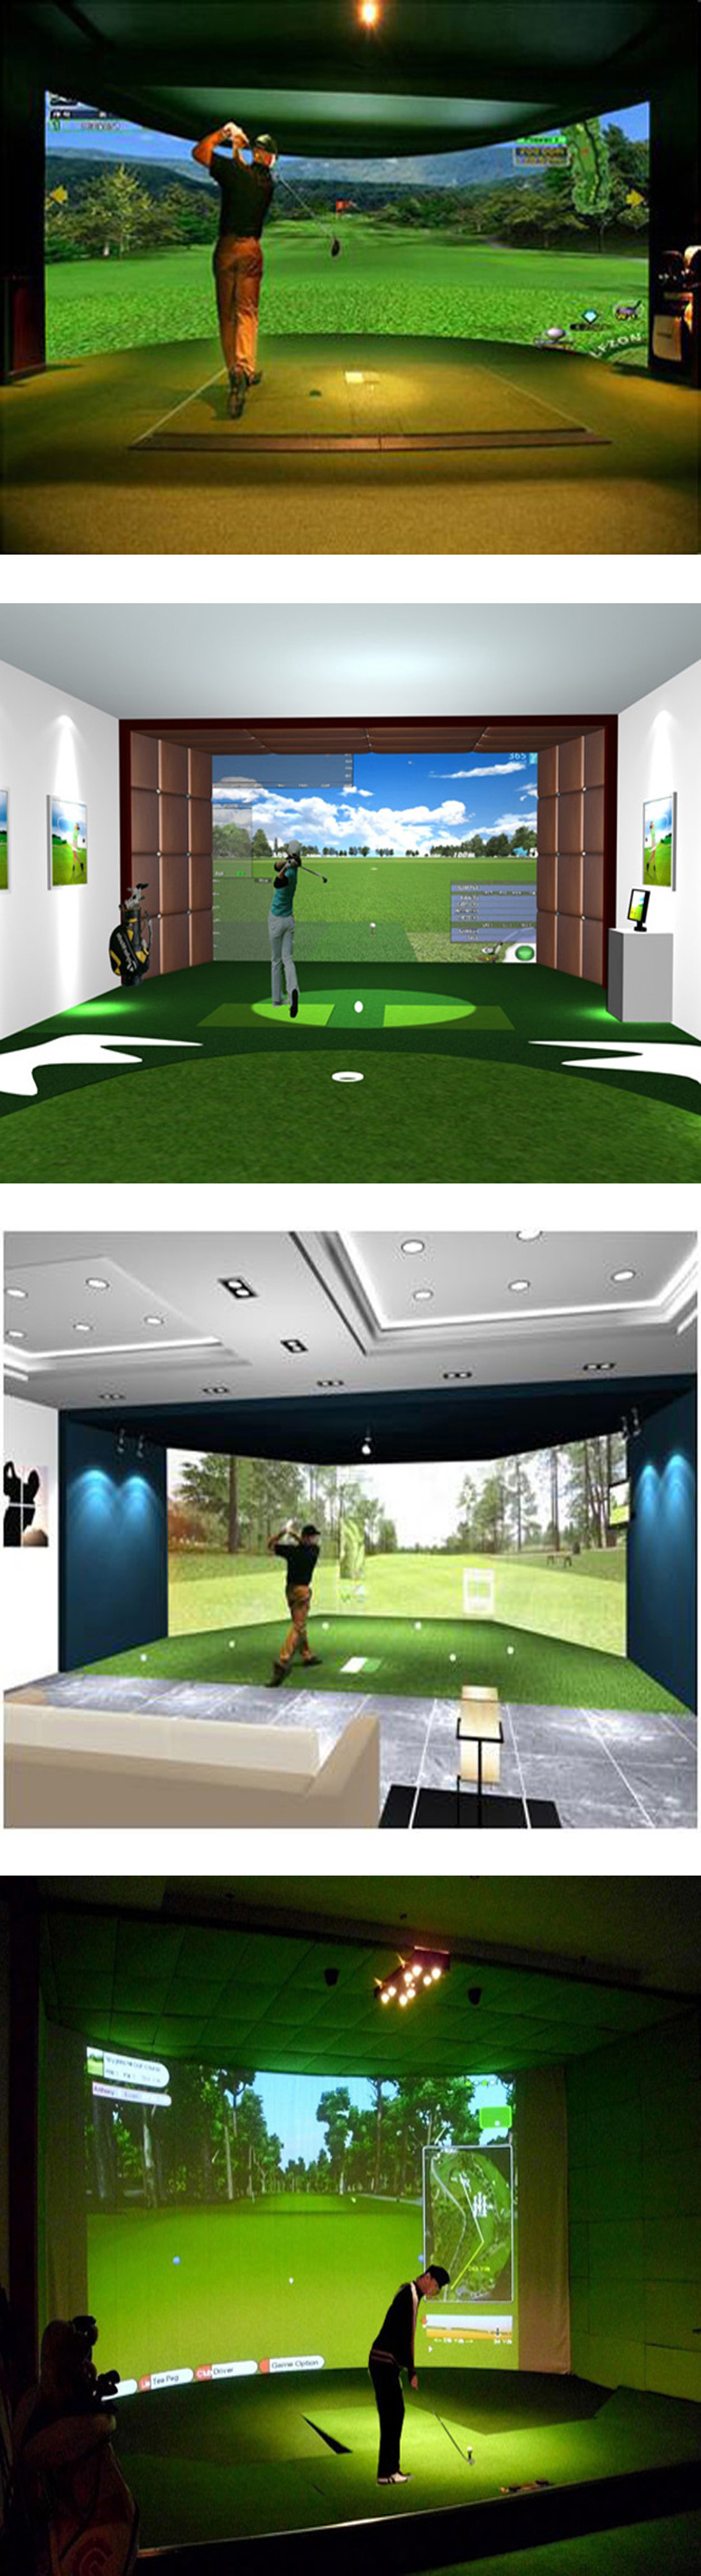 模拟高尔夫系统介绍 3.jpg